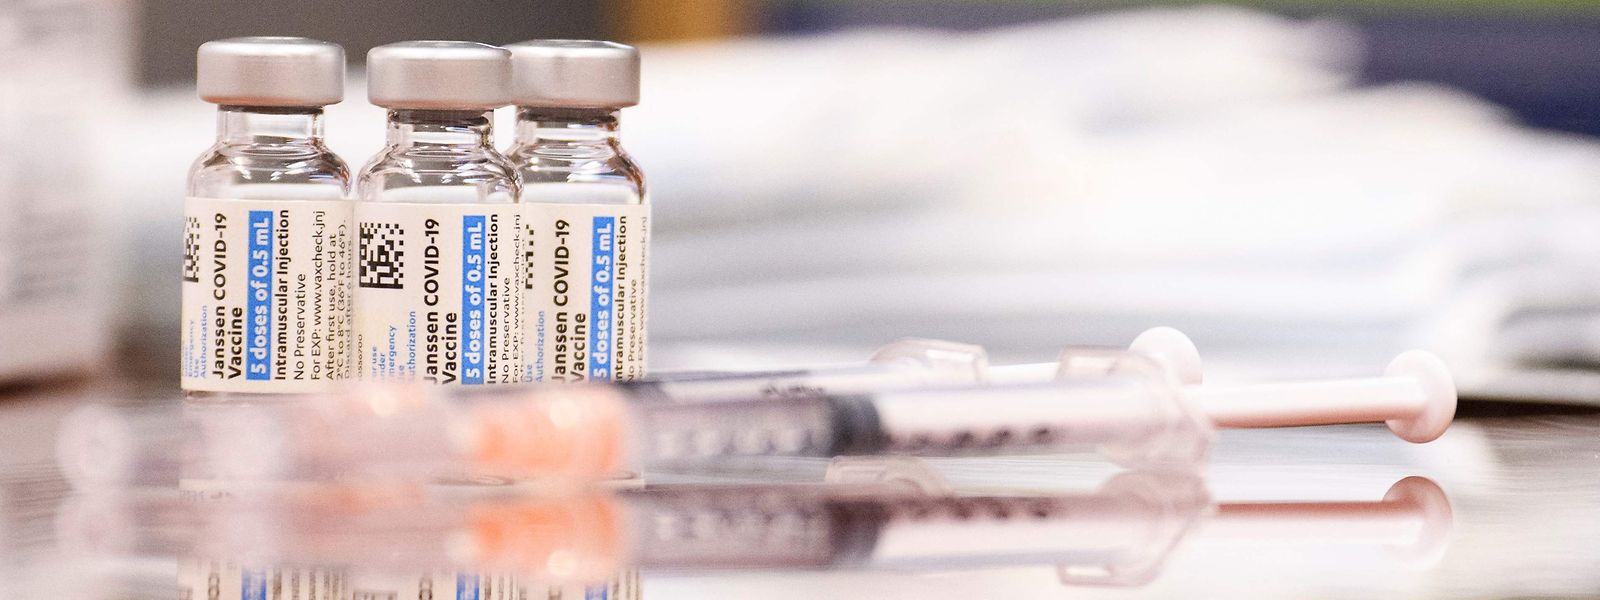 Die Impfquote ist global sehr unterschiedlich verteilt. Experten sprechen von "Impf-Apartheid".